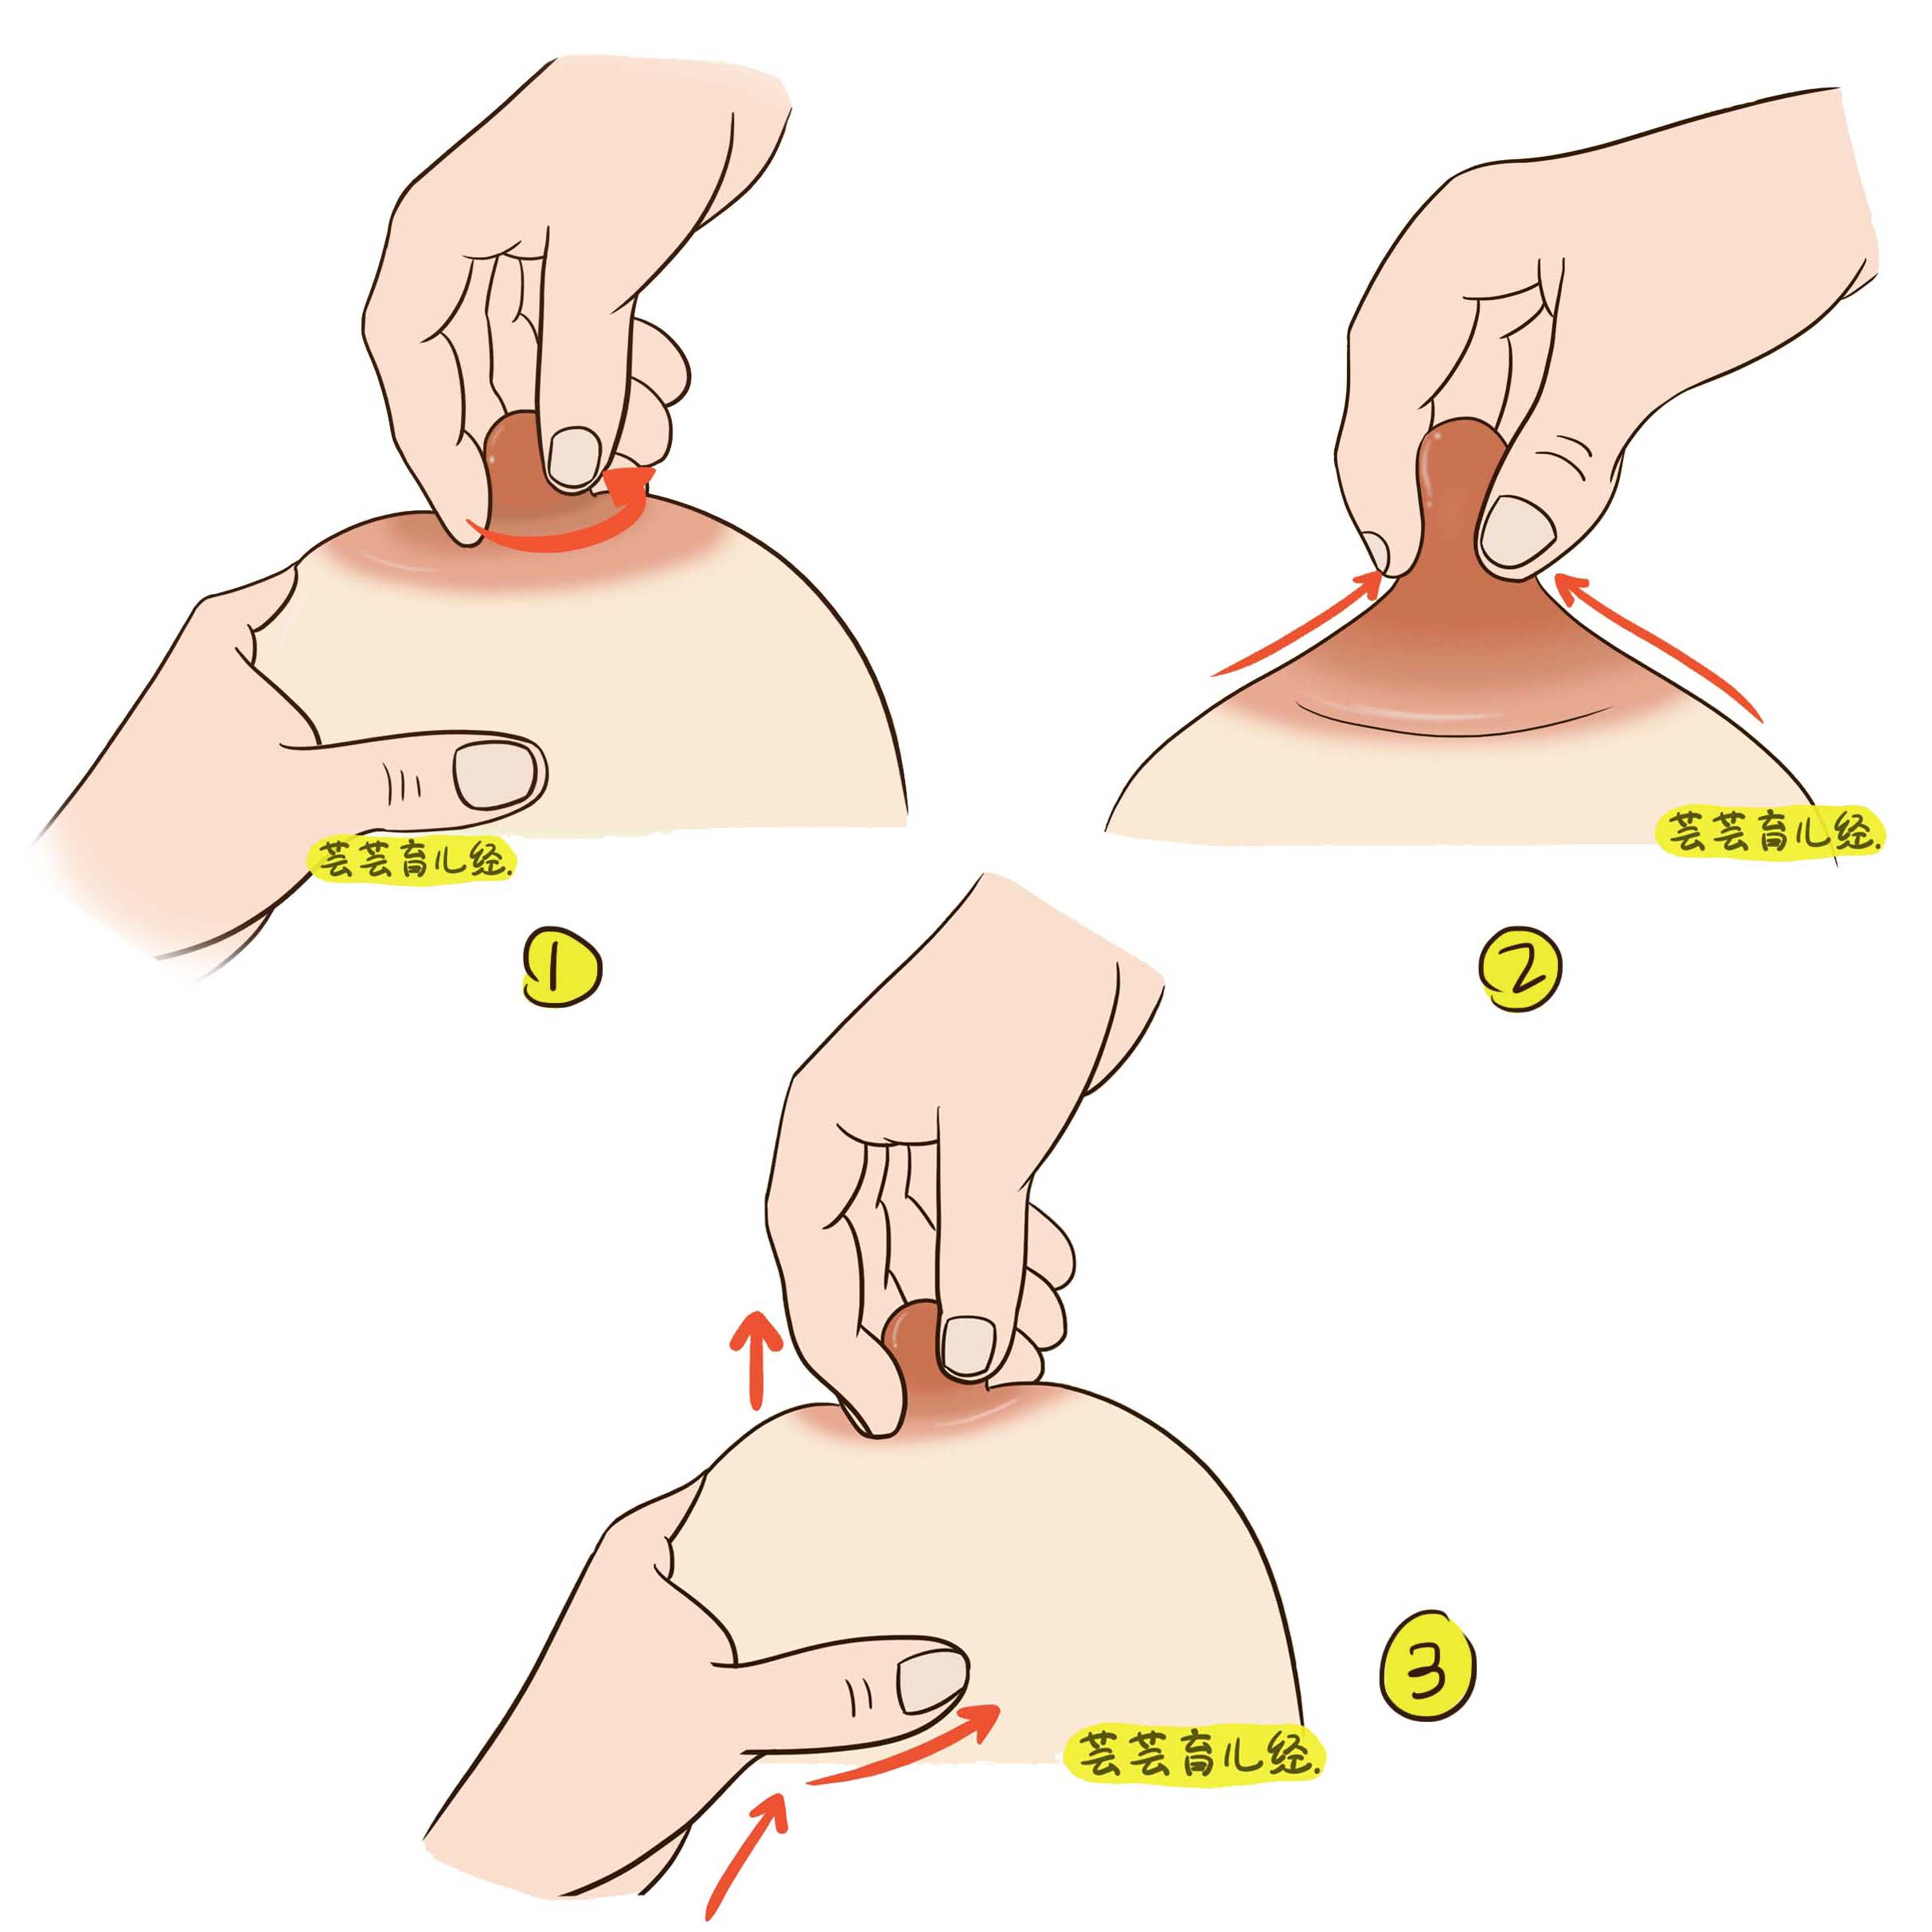 直推乳房:先用右手掌面在左侧乳房上部,即锁骨下